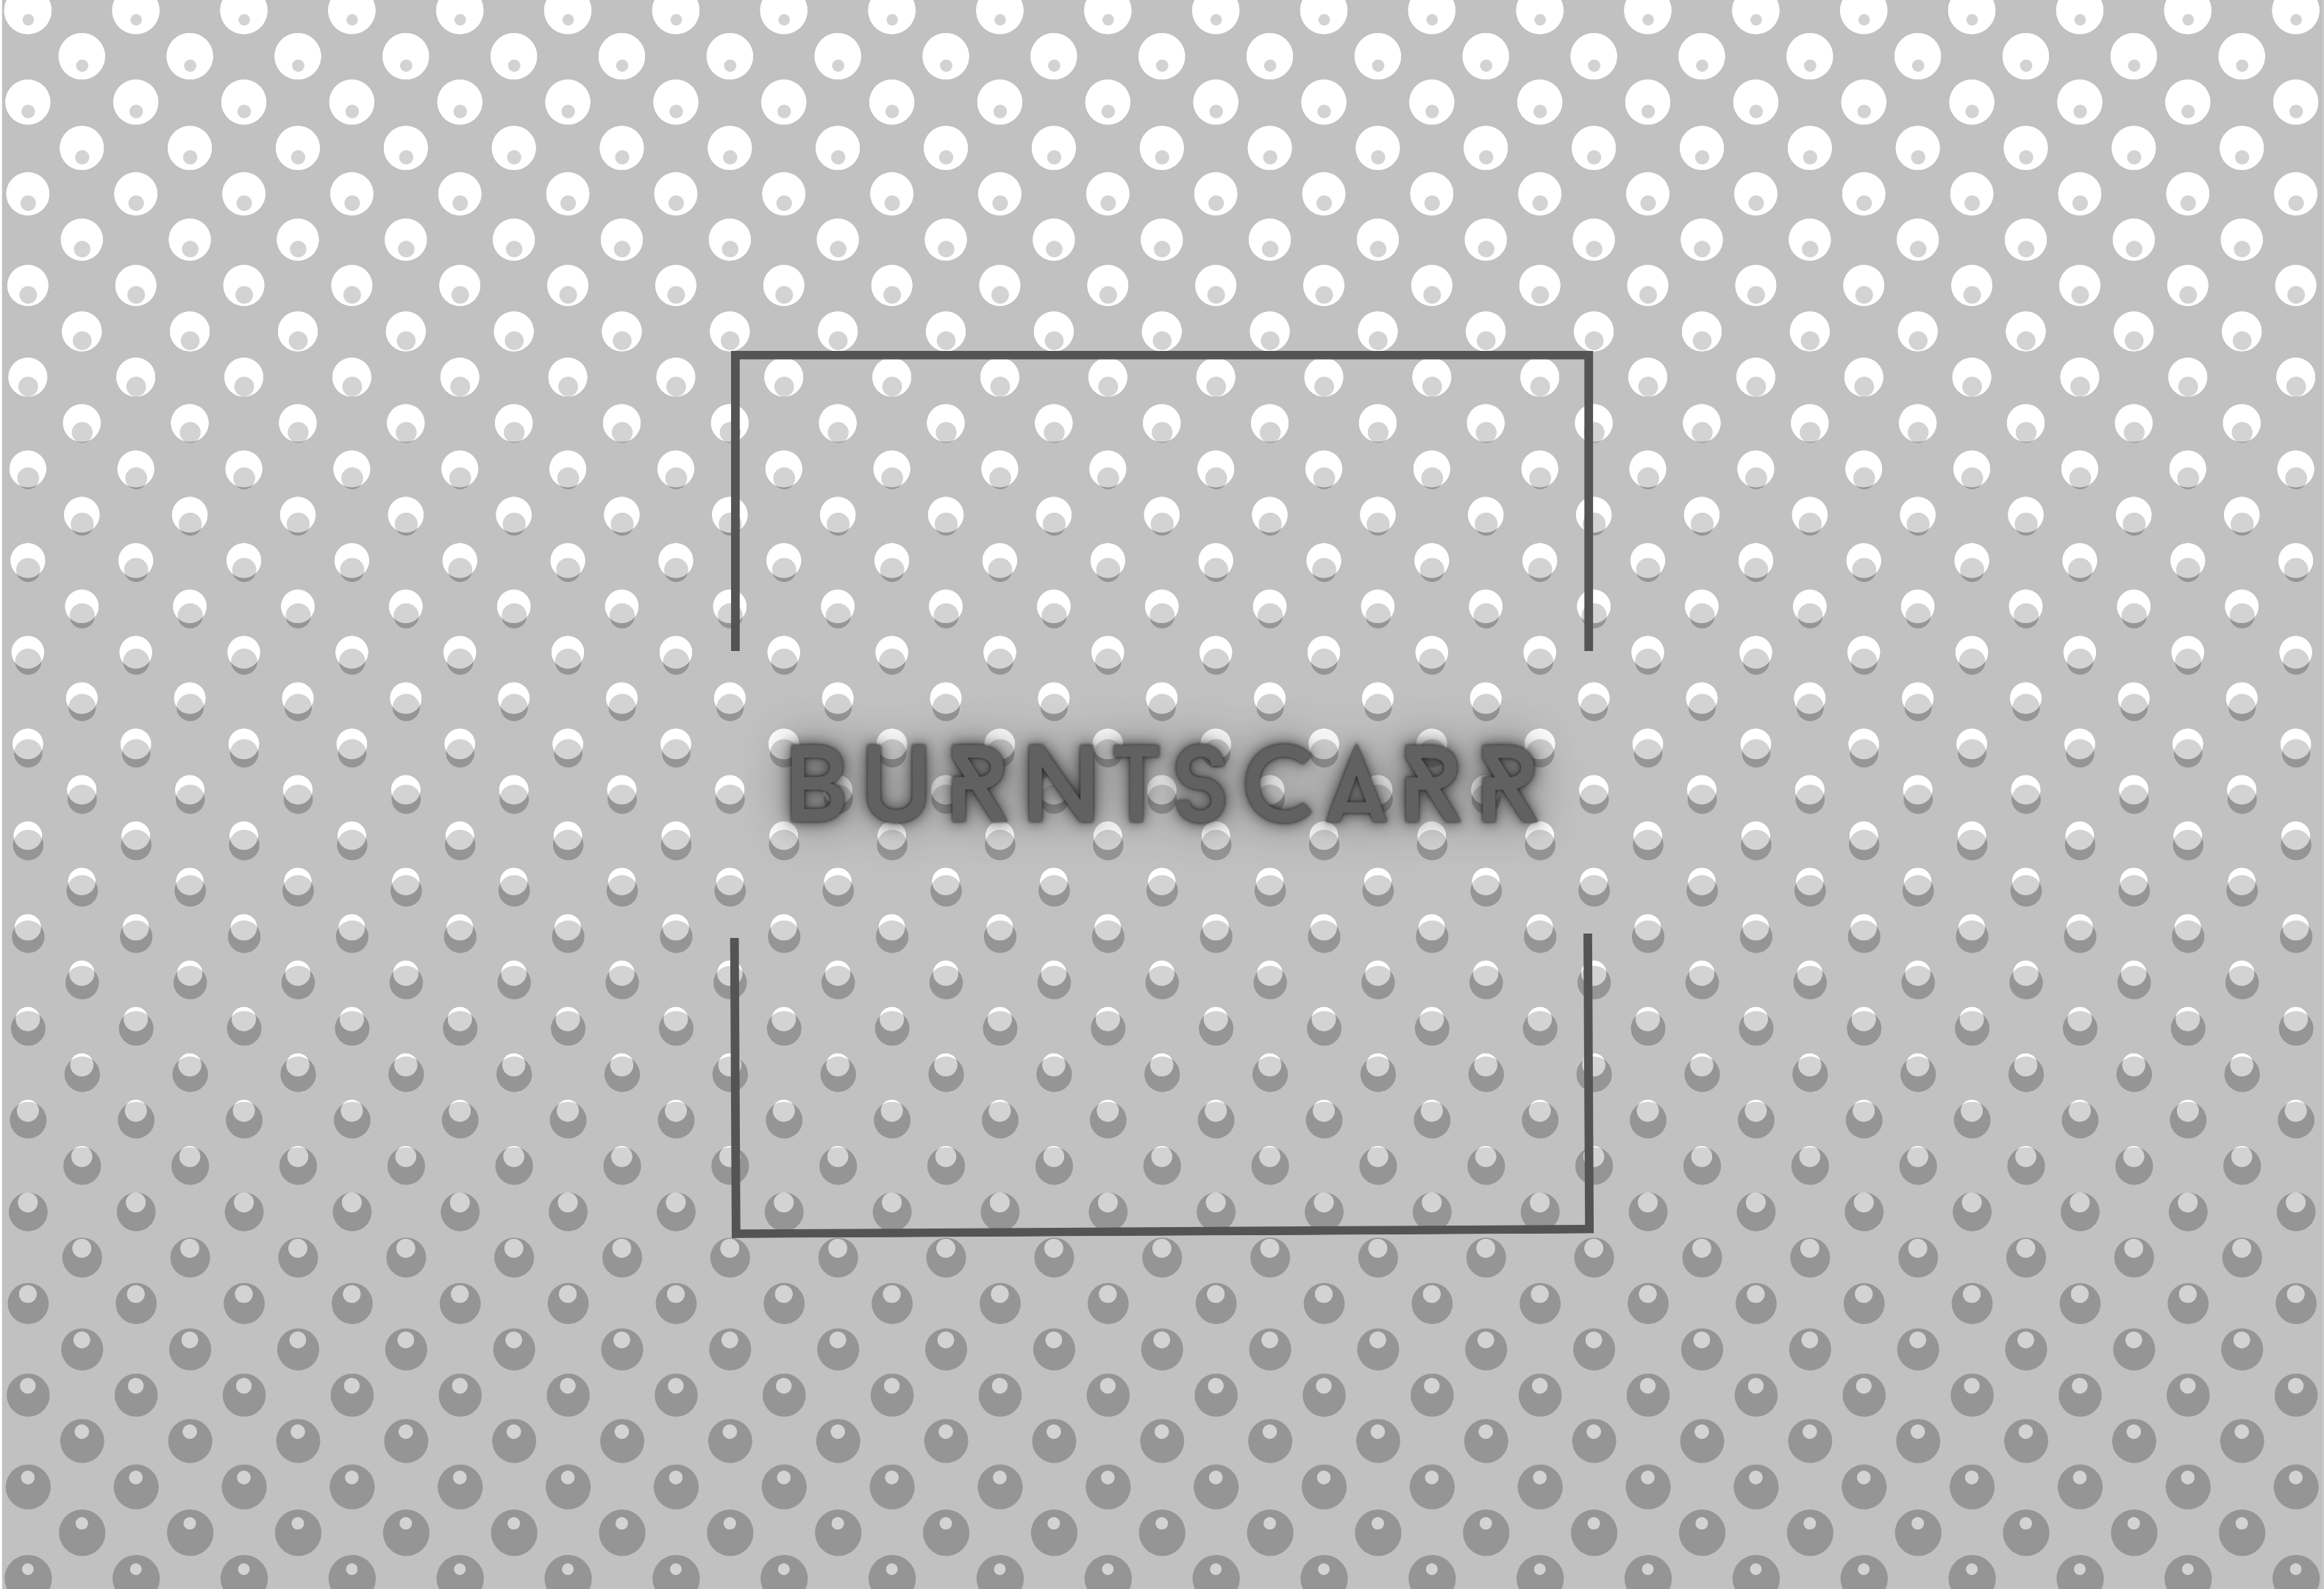 burntscarr - Stay (B-Side)